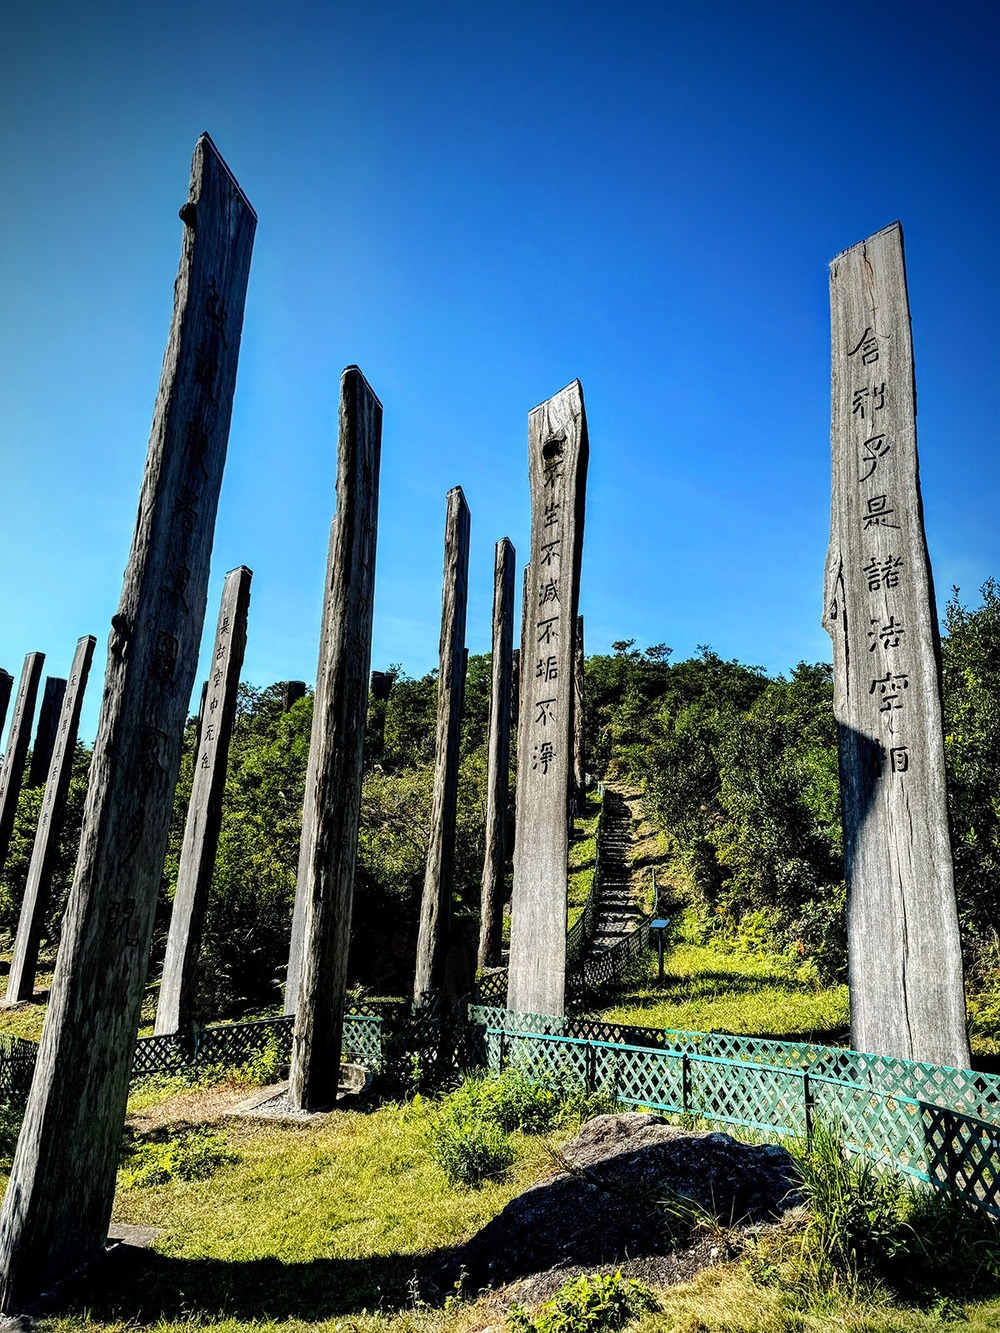 Con đường Tâm Kinh với 38 cột gỗ khổng lồ được khắc Bát Nhã Tâm Kinh